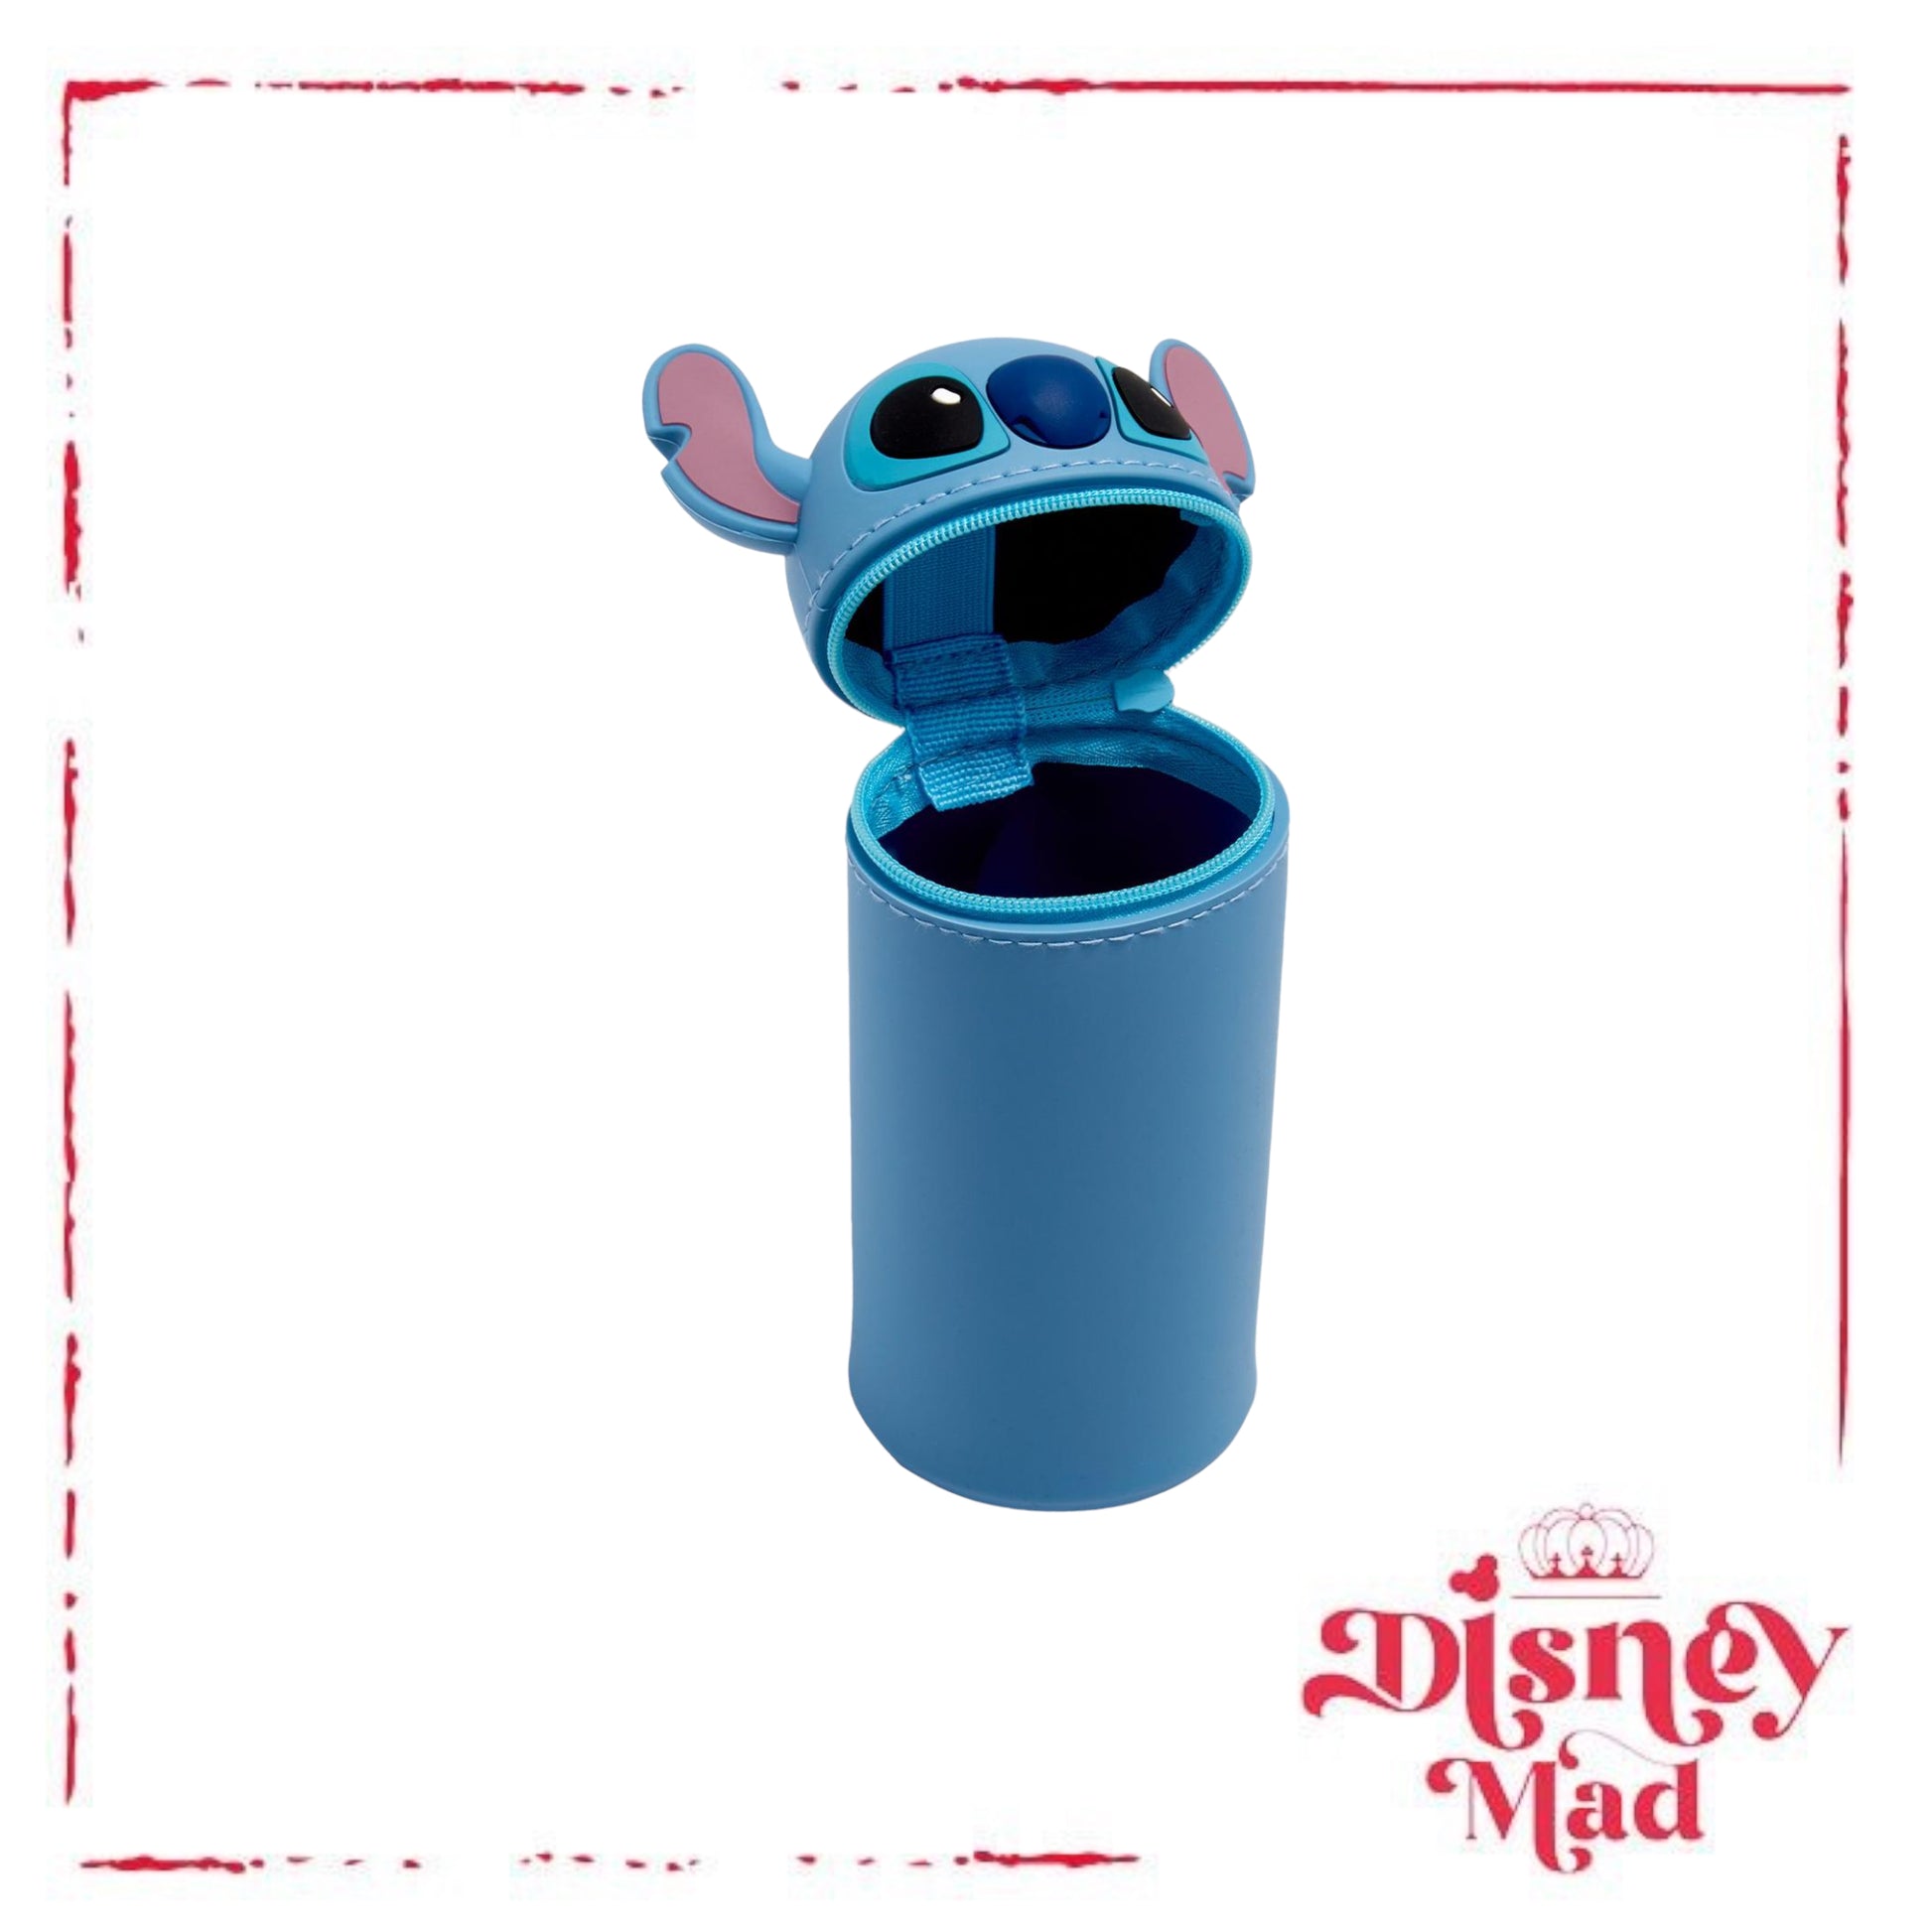 Disney Figural Novelty Pen - Stitch - Lilo & Stitch